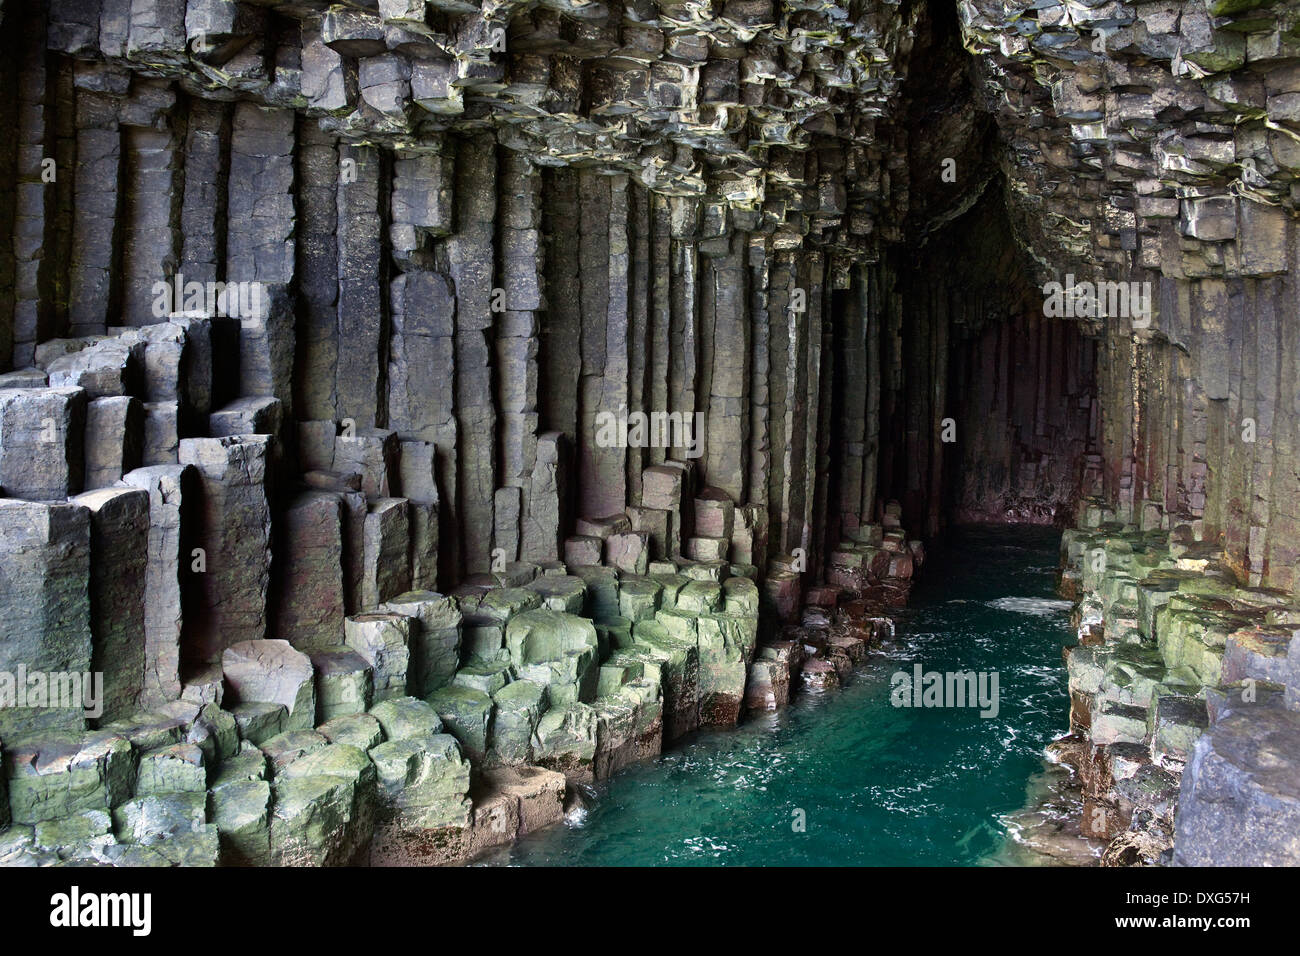 La formation de basalte à l'intérieur de la Grotte de Fingal, sur l'île de Staffa dans les îles Treshnish dans les Hébrides intérieures, Ecosse Banque D'Images